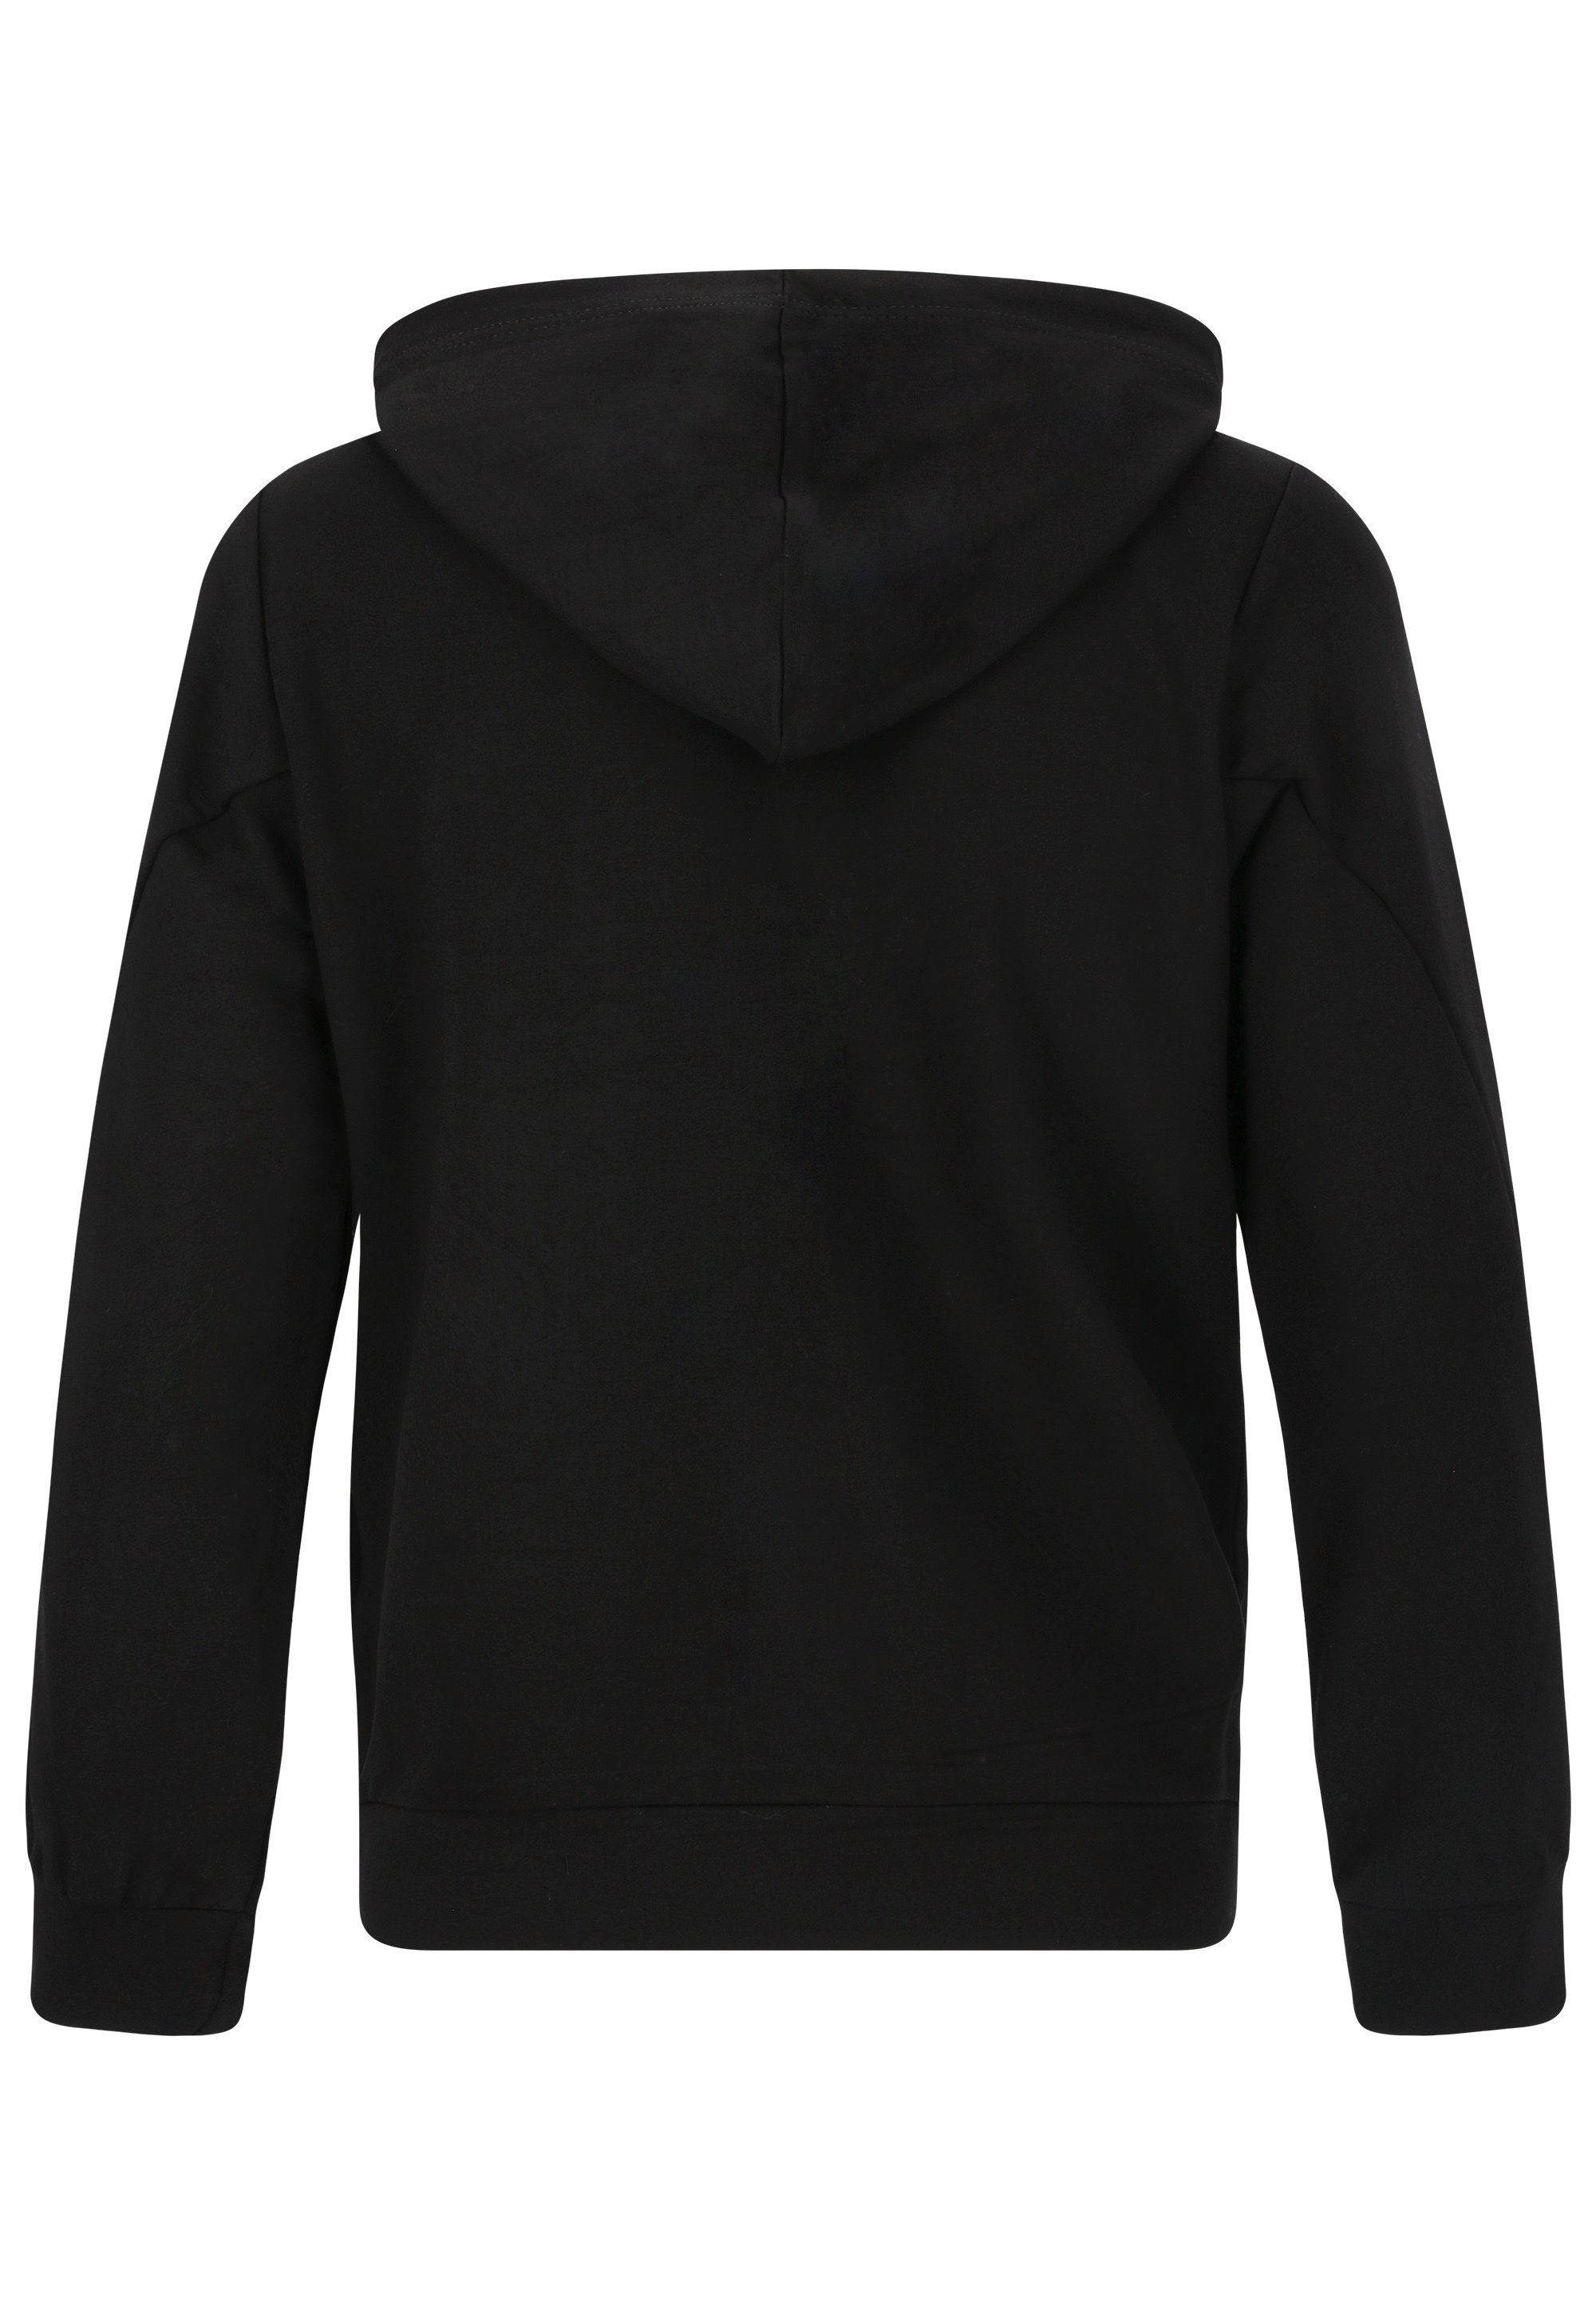 ENDURANCE Sweatshirt Grovent mit schwarz Baumwoll-Touch